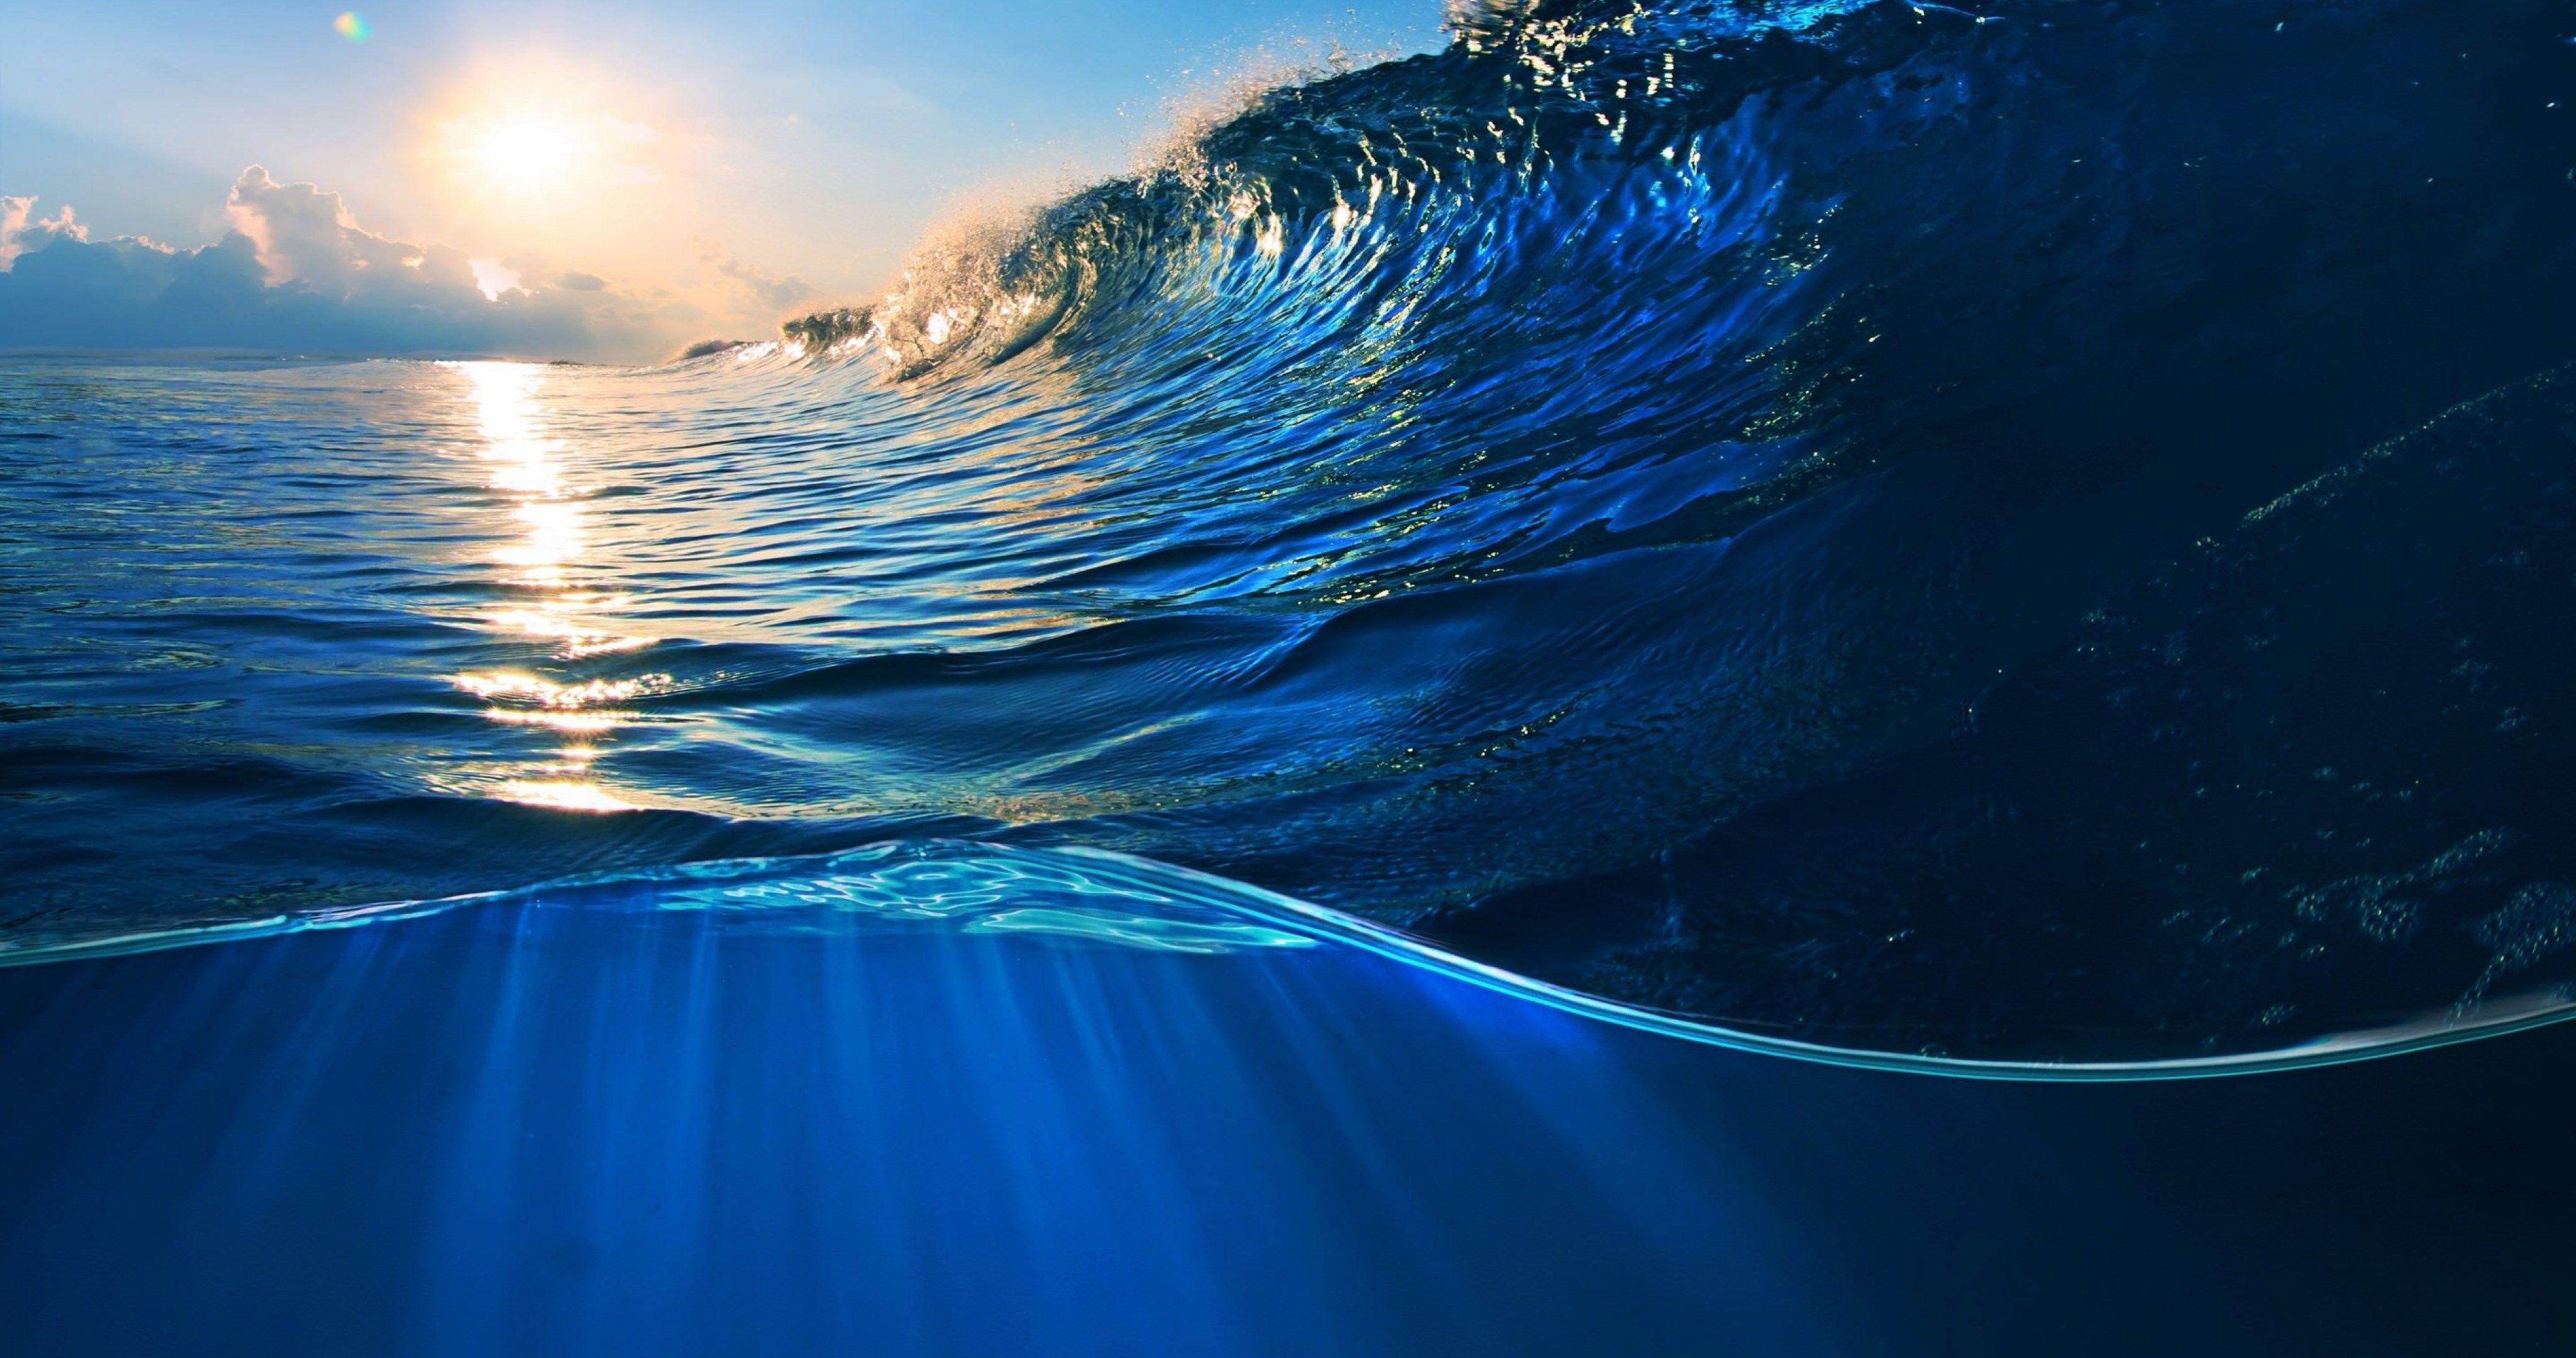 4K Ultra HD Ocean Wallpapers - Top Free 4K Ultra HD Ocean Backgrounds